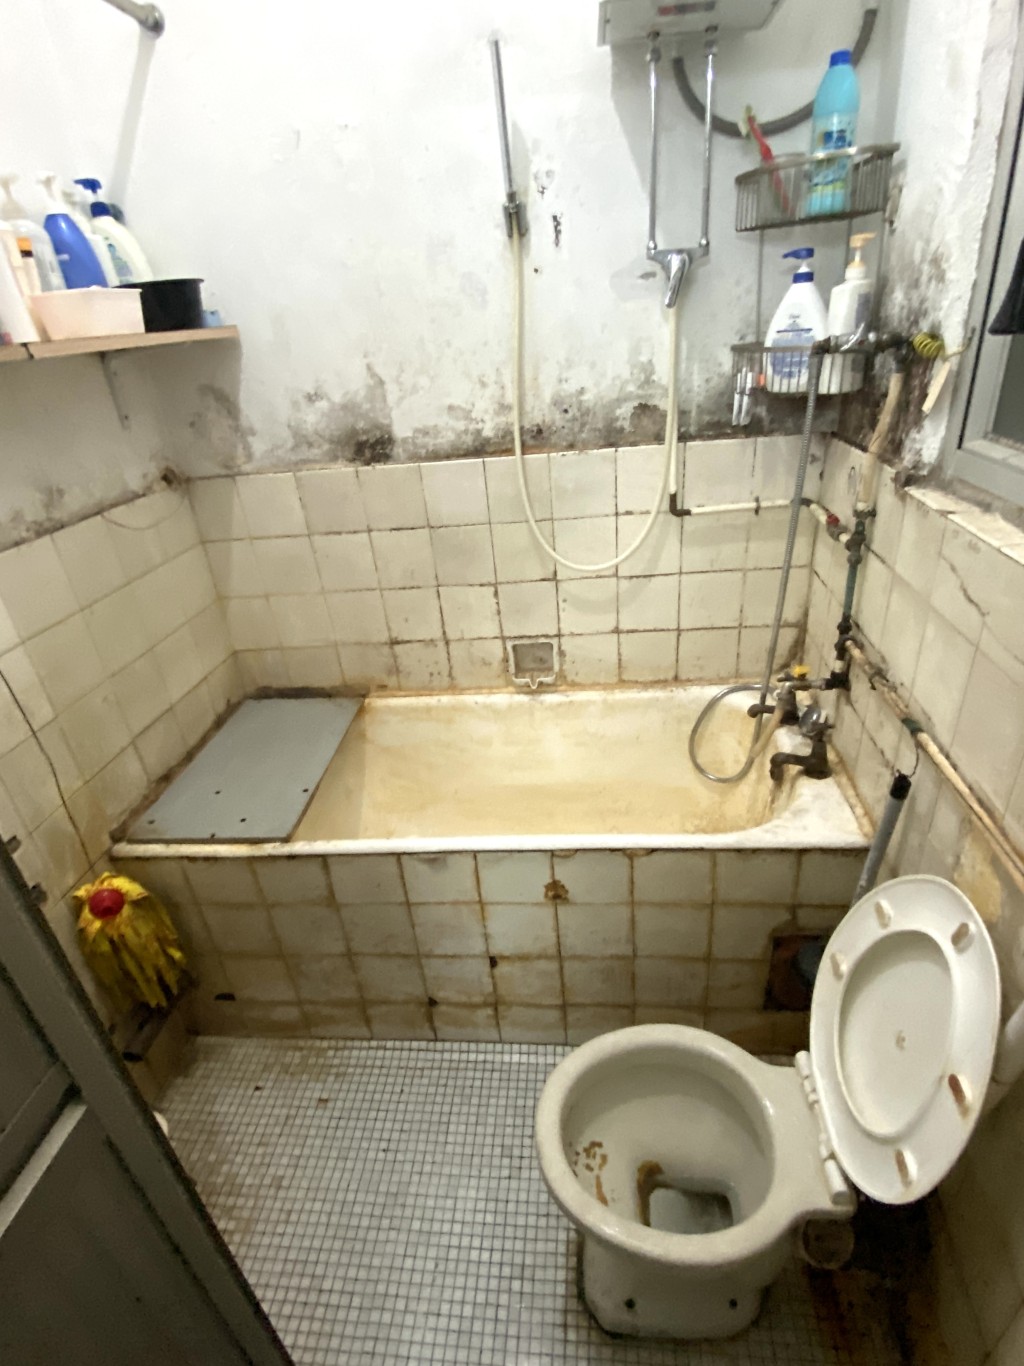 浴室及厕所充斥久未清洁的污垢。